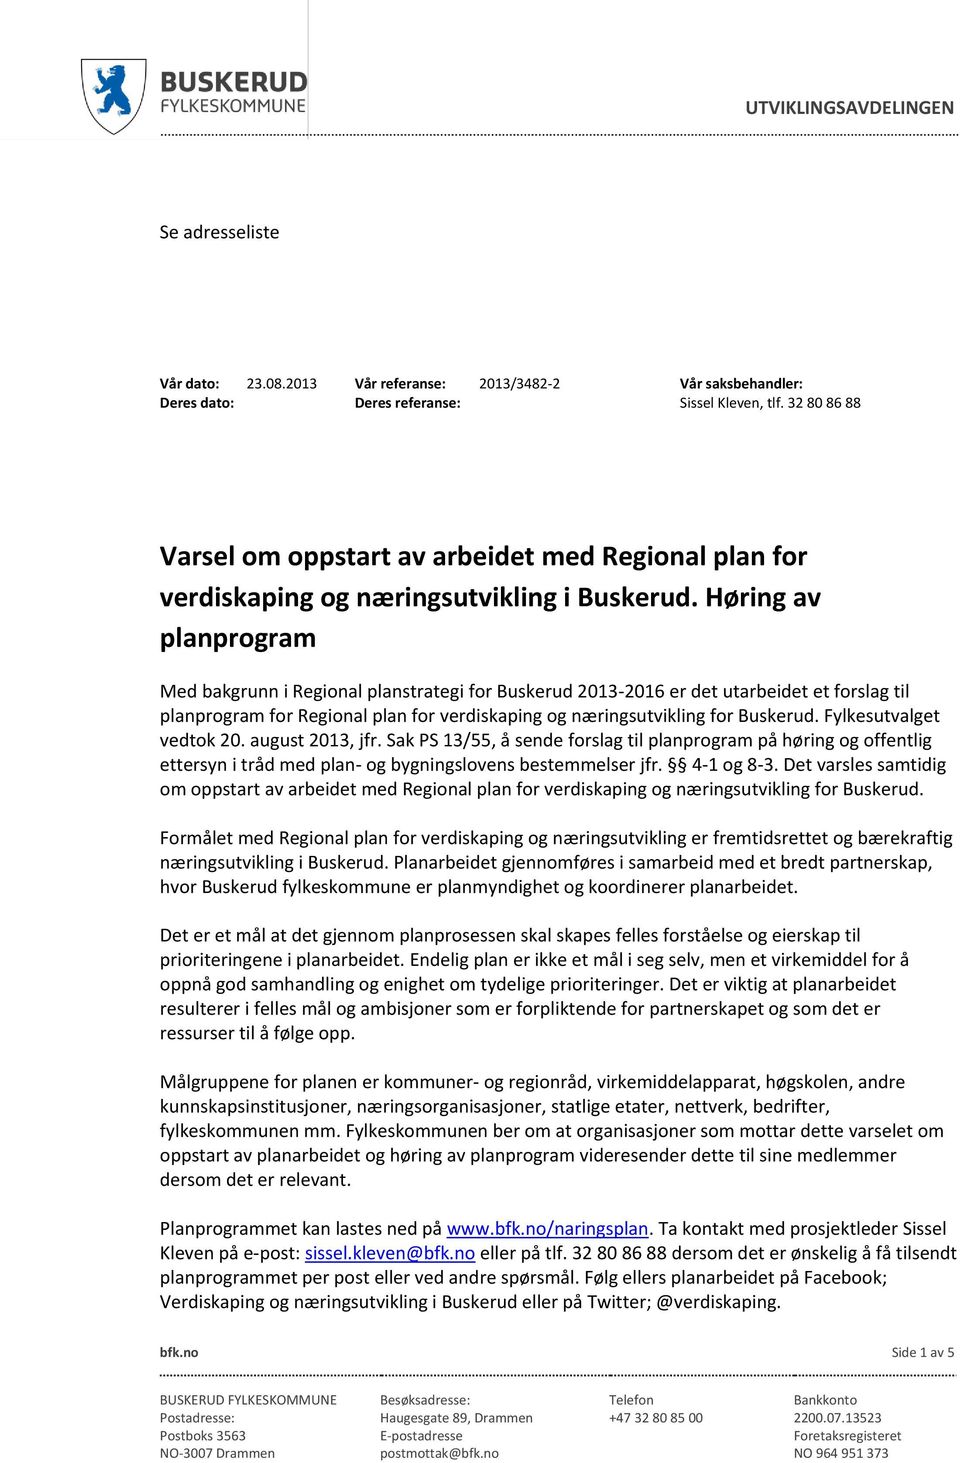 Høring av planprogram Med bakgrunn i Regional planstrategi for Buskerud 2013-2016 er det utarbeidet et forslag til planprogram for Regional plan for verdiskaping og næringsutvikling for Buskerud.